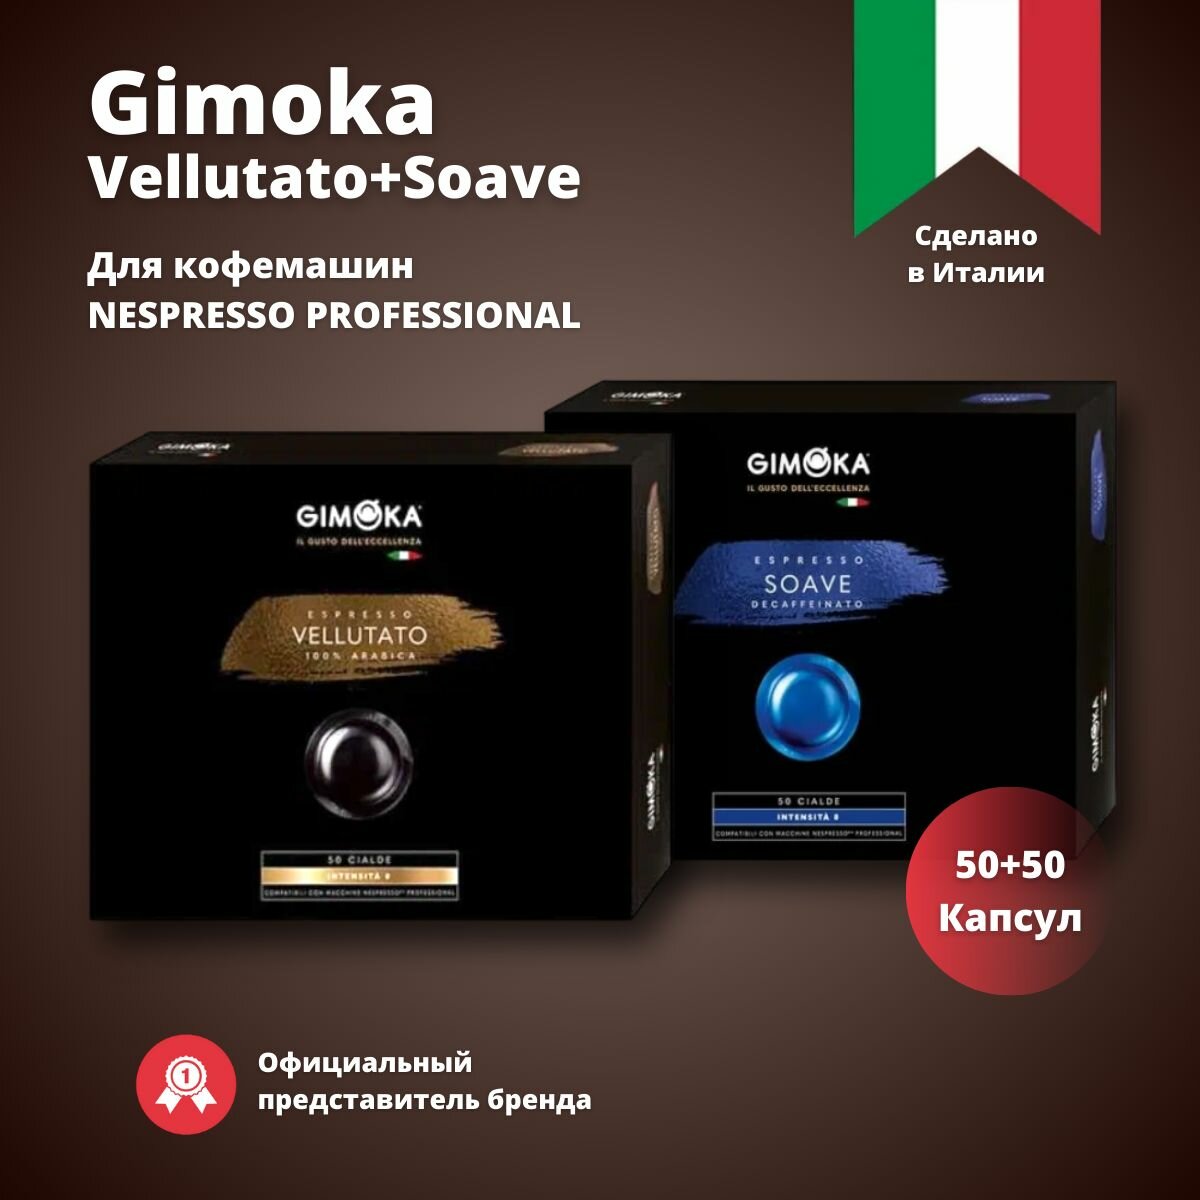 Кофе в капсулах Nespresso Professional Gimoka Vellutato + Soave 50 штук в каждой пачке